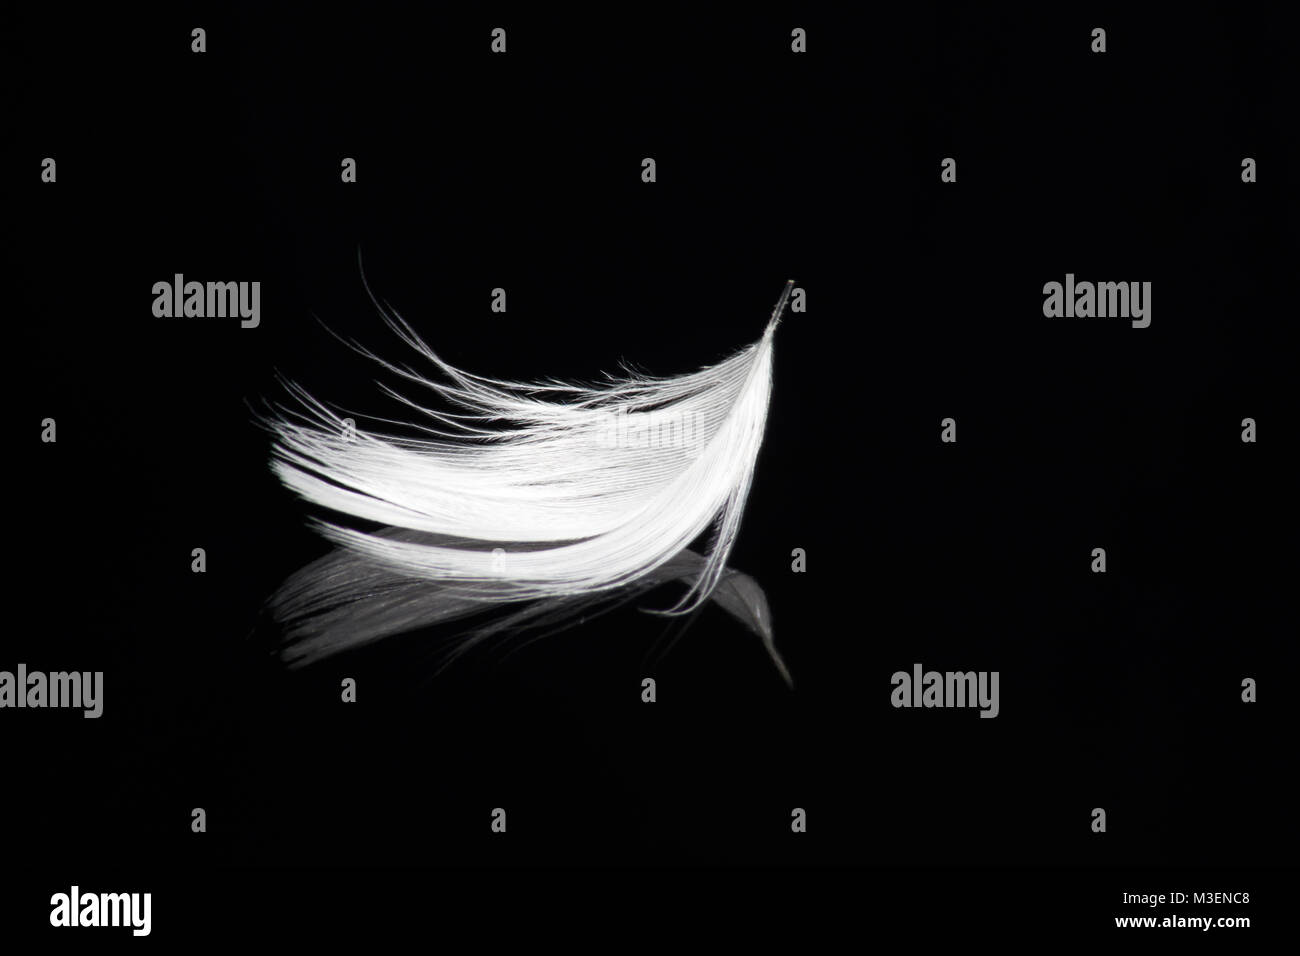 Weiße Feder auf schwarzen Hintergrund mit Reflexion - Frieden, Harmonie, Delikatesse, Ruhe, Engel, Glauben, Gelassenheit, Geist, Schwerelosigkeit Stockfoto